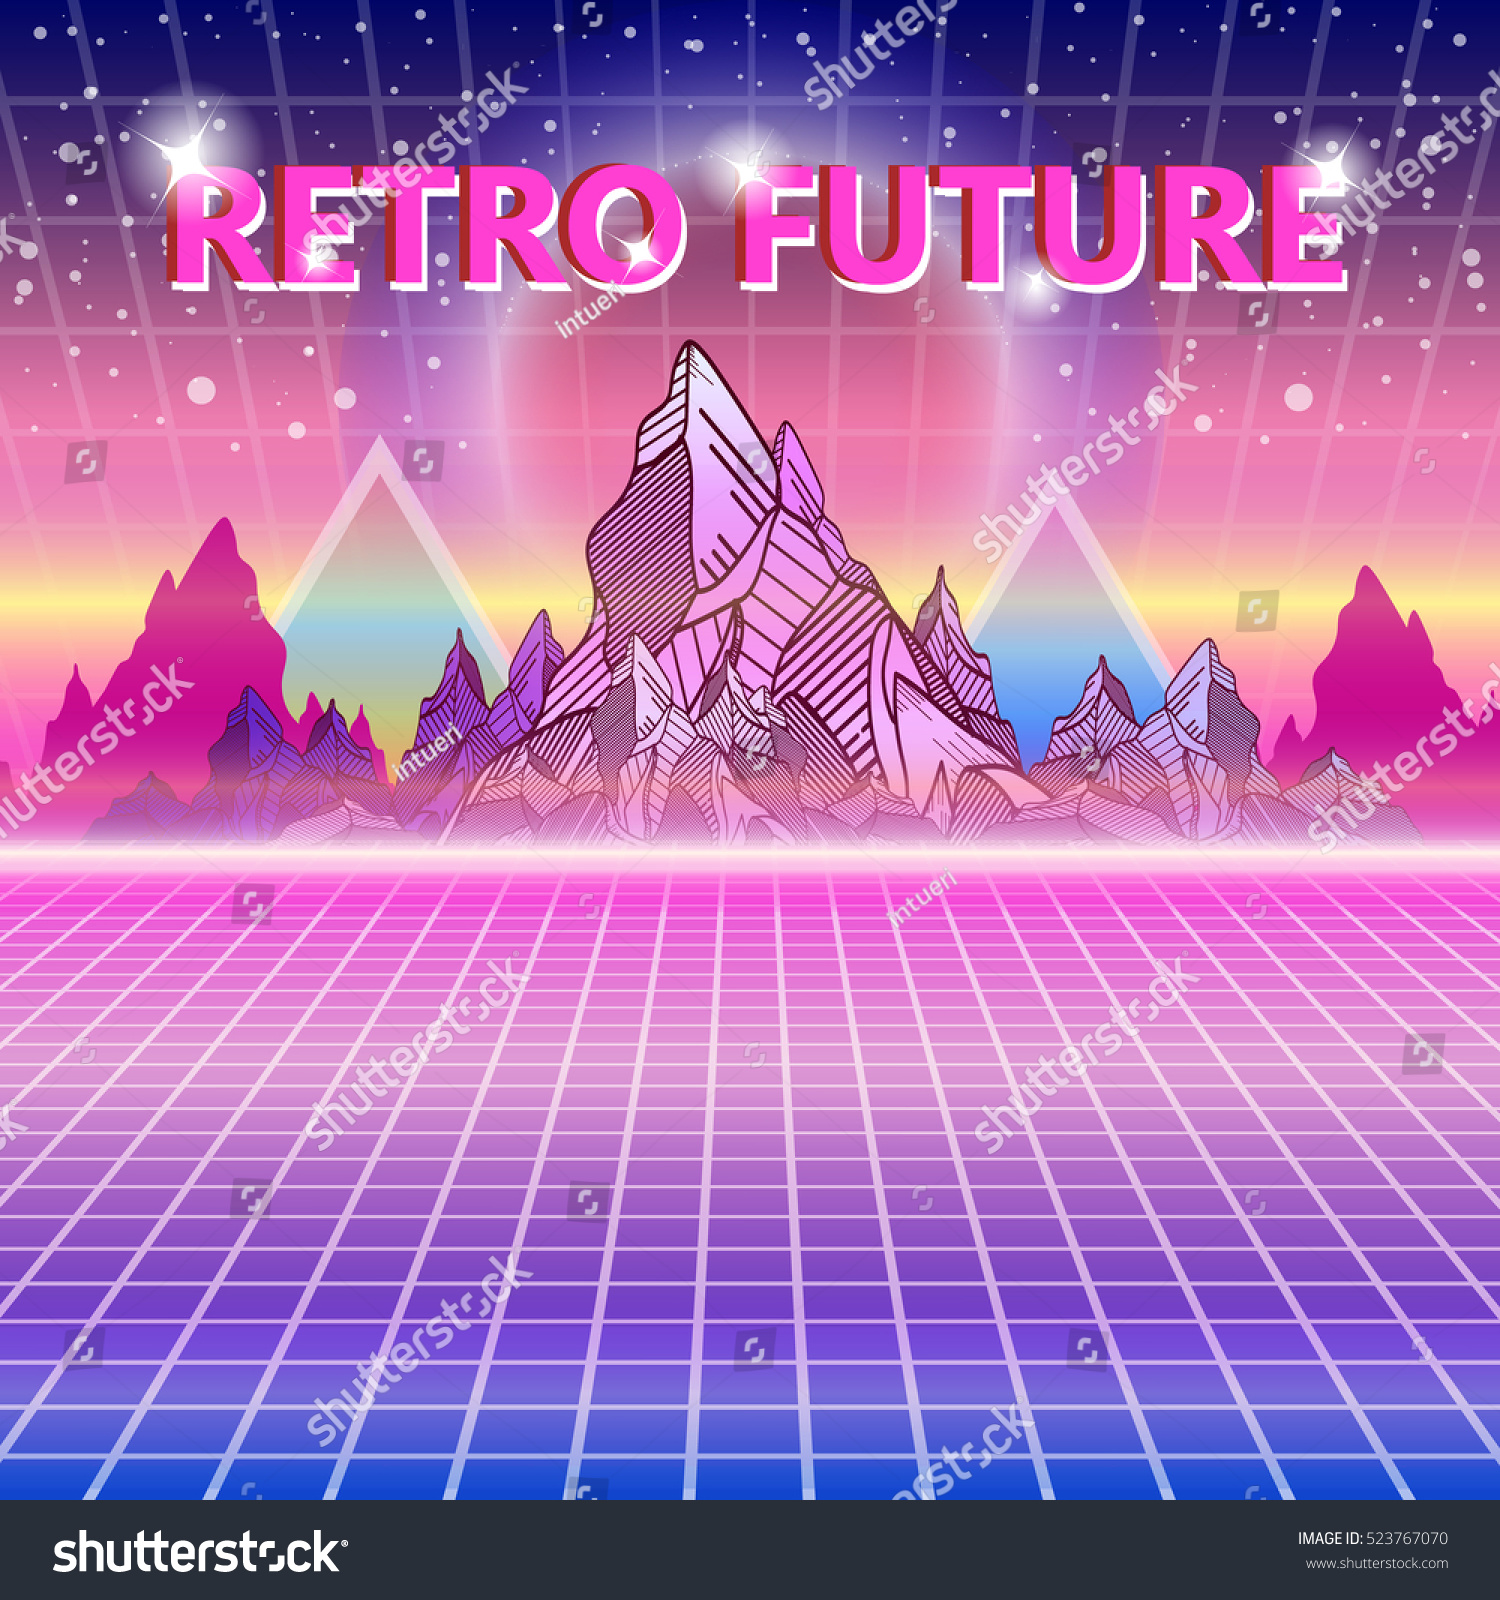 レトロな未来 80年代スタイルのsf背景 ウェーブミュージックアルバムは サイバーサン スペース 山のテンプレートをカバーしています サイバー ワールドの風景 レトロな将来のイラスト80年代スタイルの背景ベクター画像 のベクター画像素材 ロイヤリティフリー